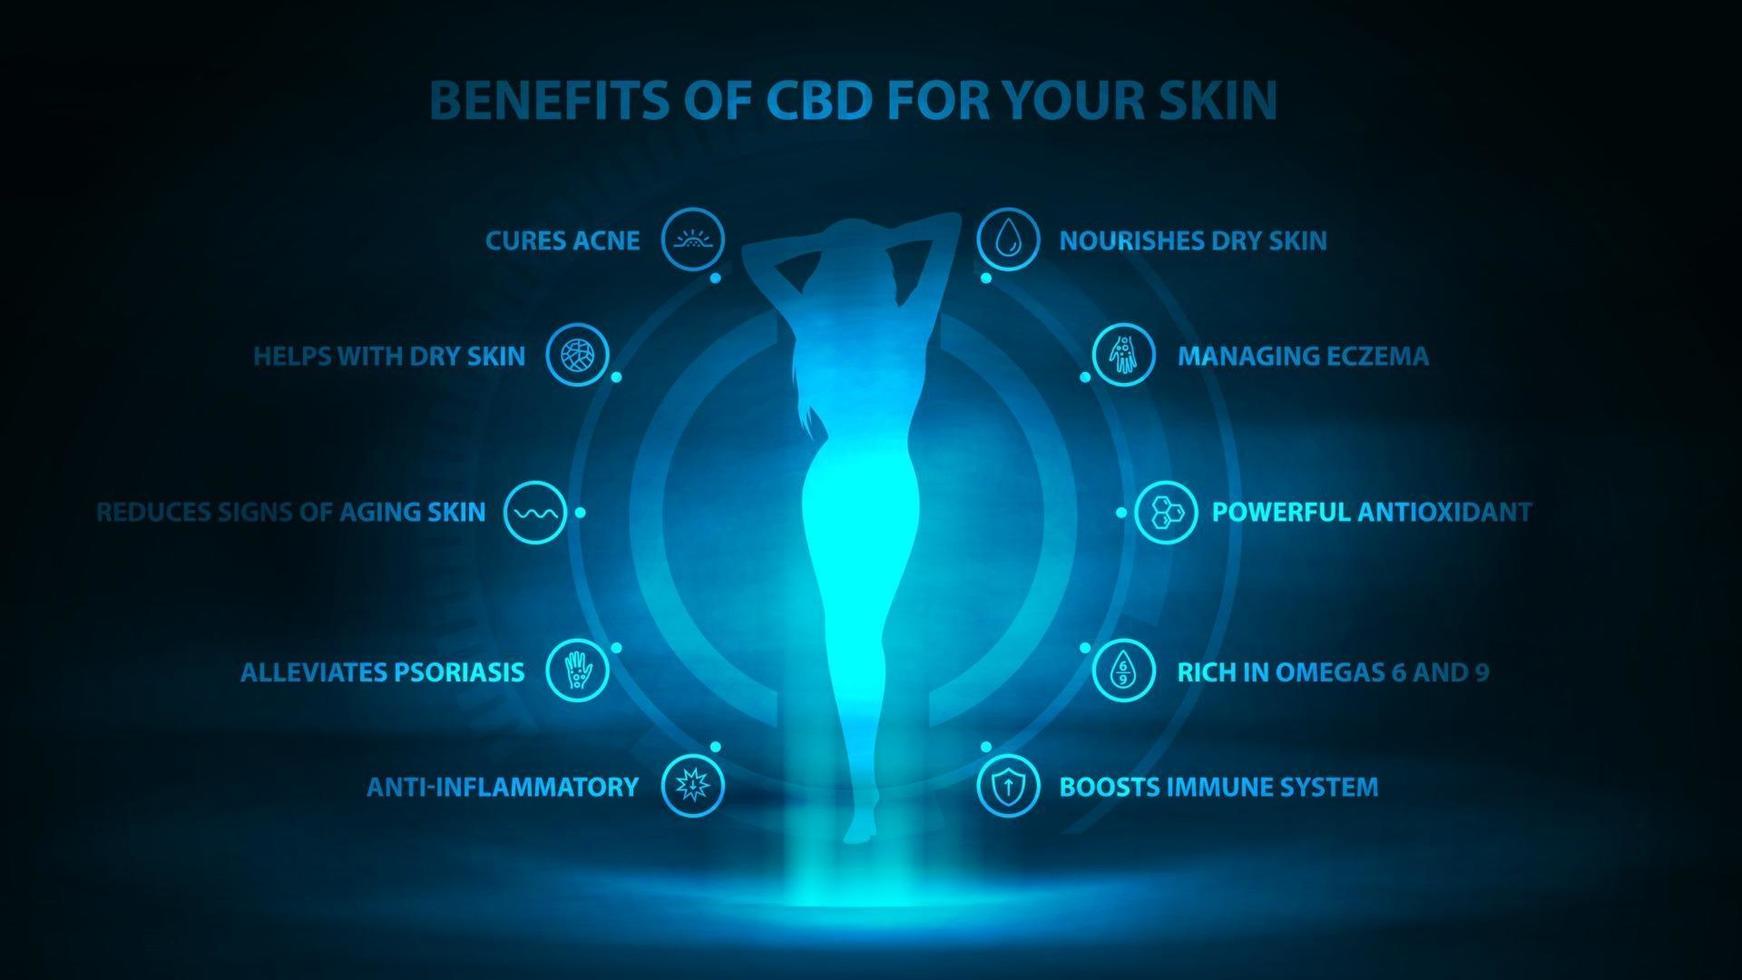 avantages médicaux du CBD pour votre peau, affiche numérique sombre et bleue avec scène néon sombre, icônes des avantages médicaux et hologramme de la jeune fille vecteur